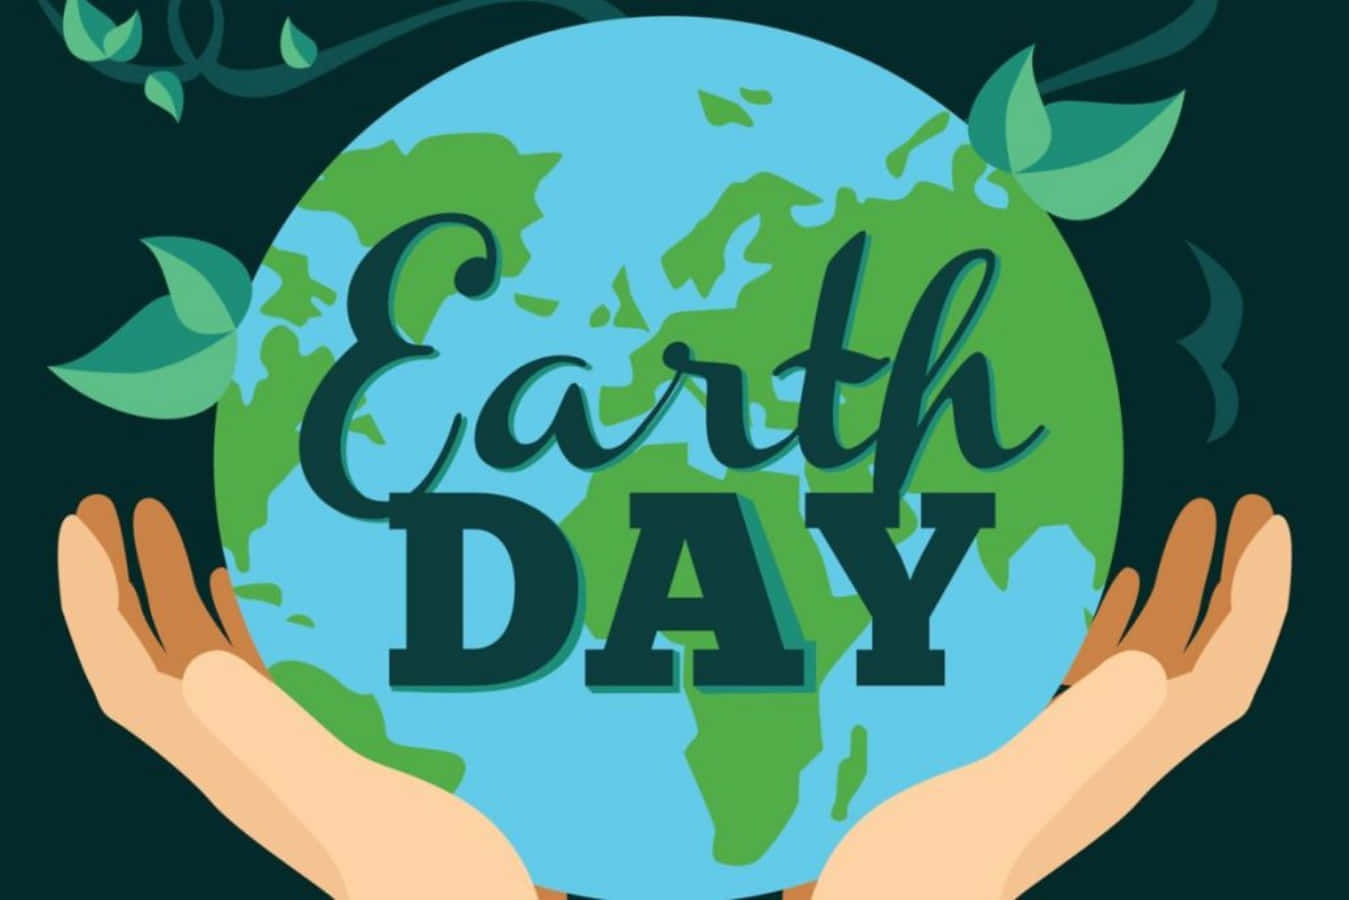 Feiernsie Den Earth Day Und Schließen Sie Sich Dem Kampf Zum Schutz Unseres Planeten An.